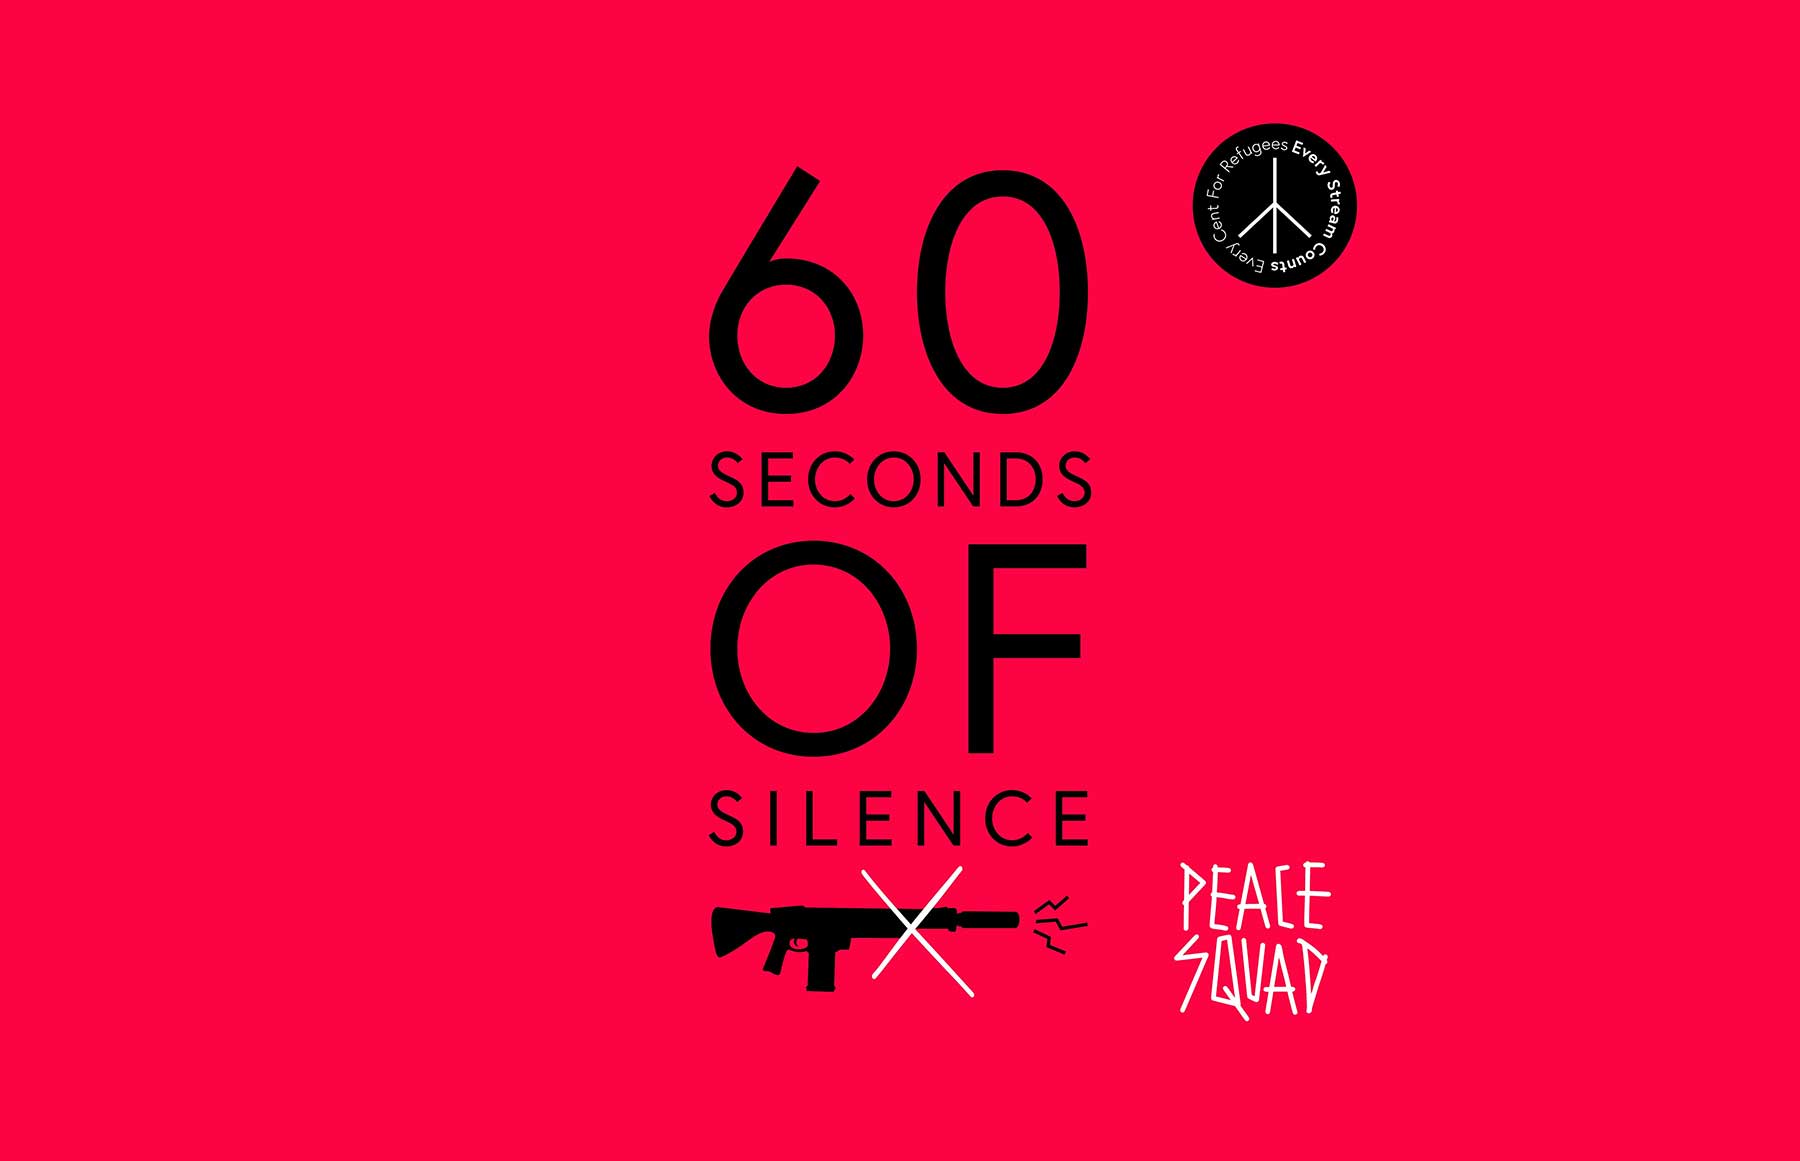 60 Sekunden Stille anhören, um der Ukraine zu helfen